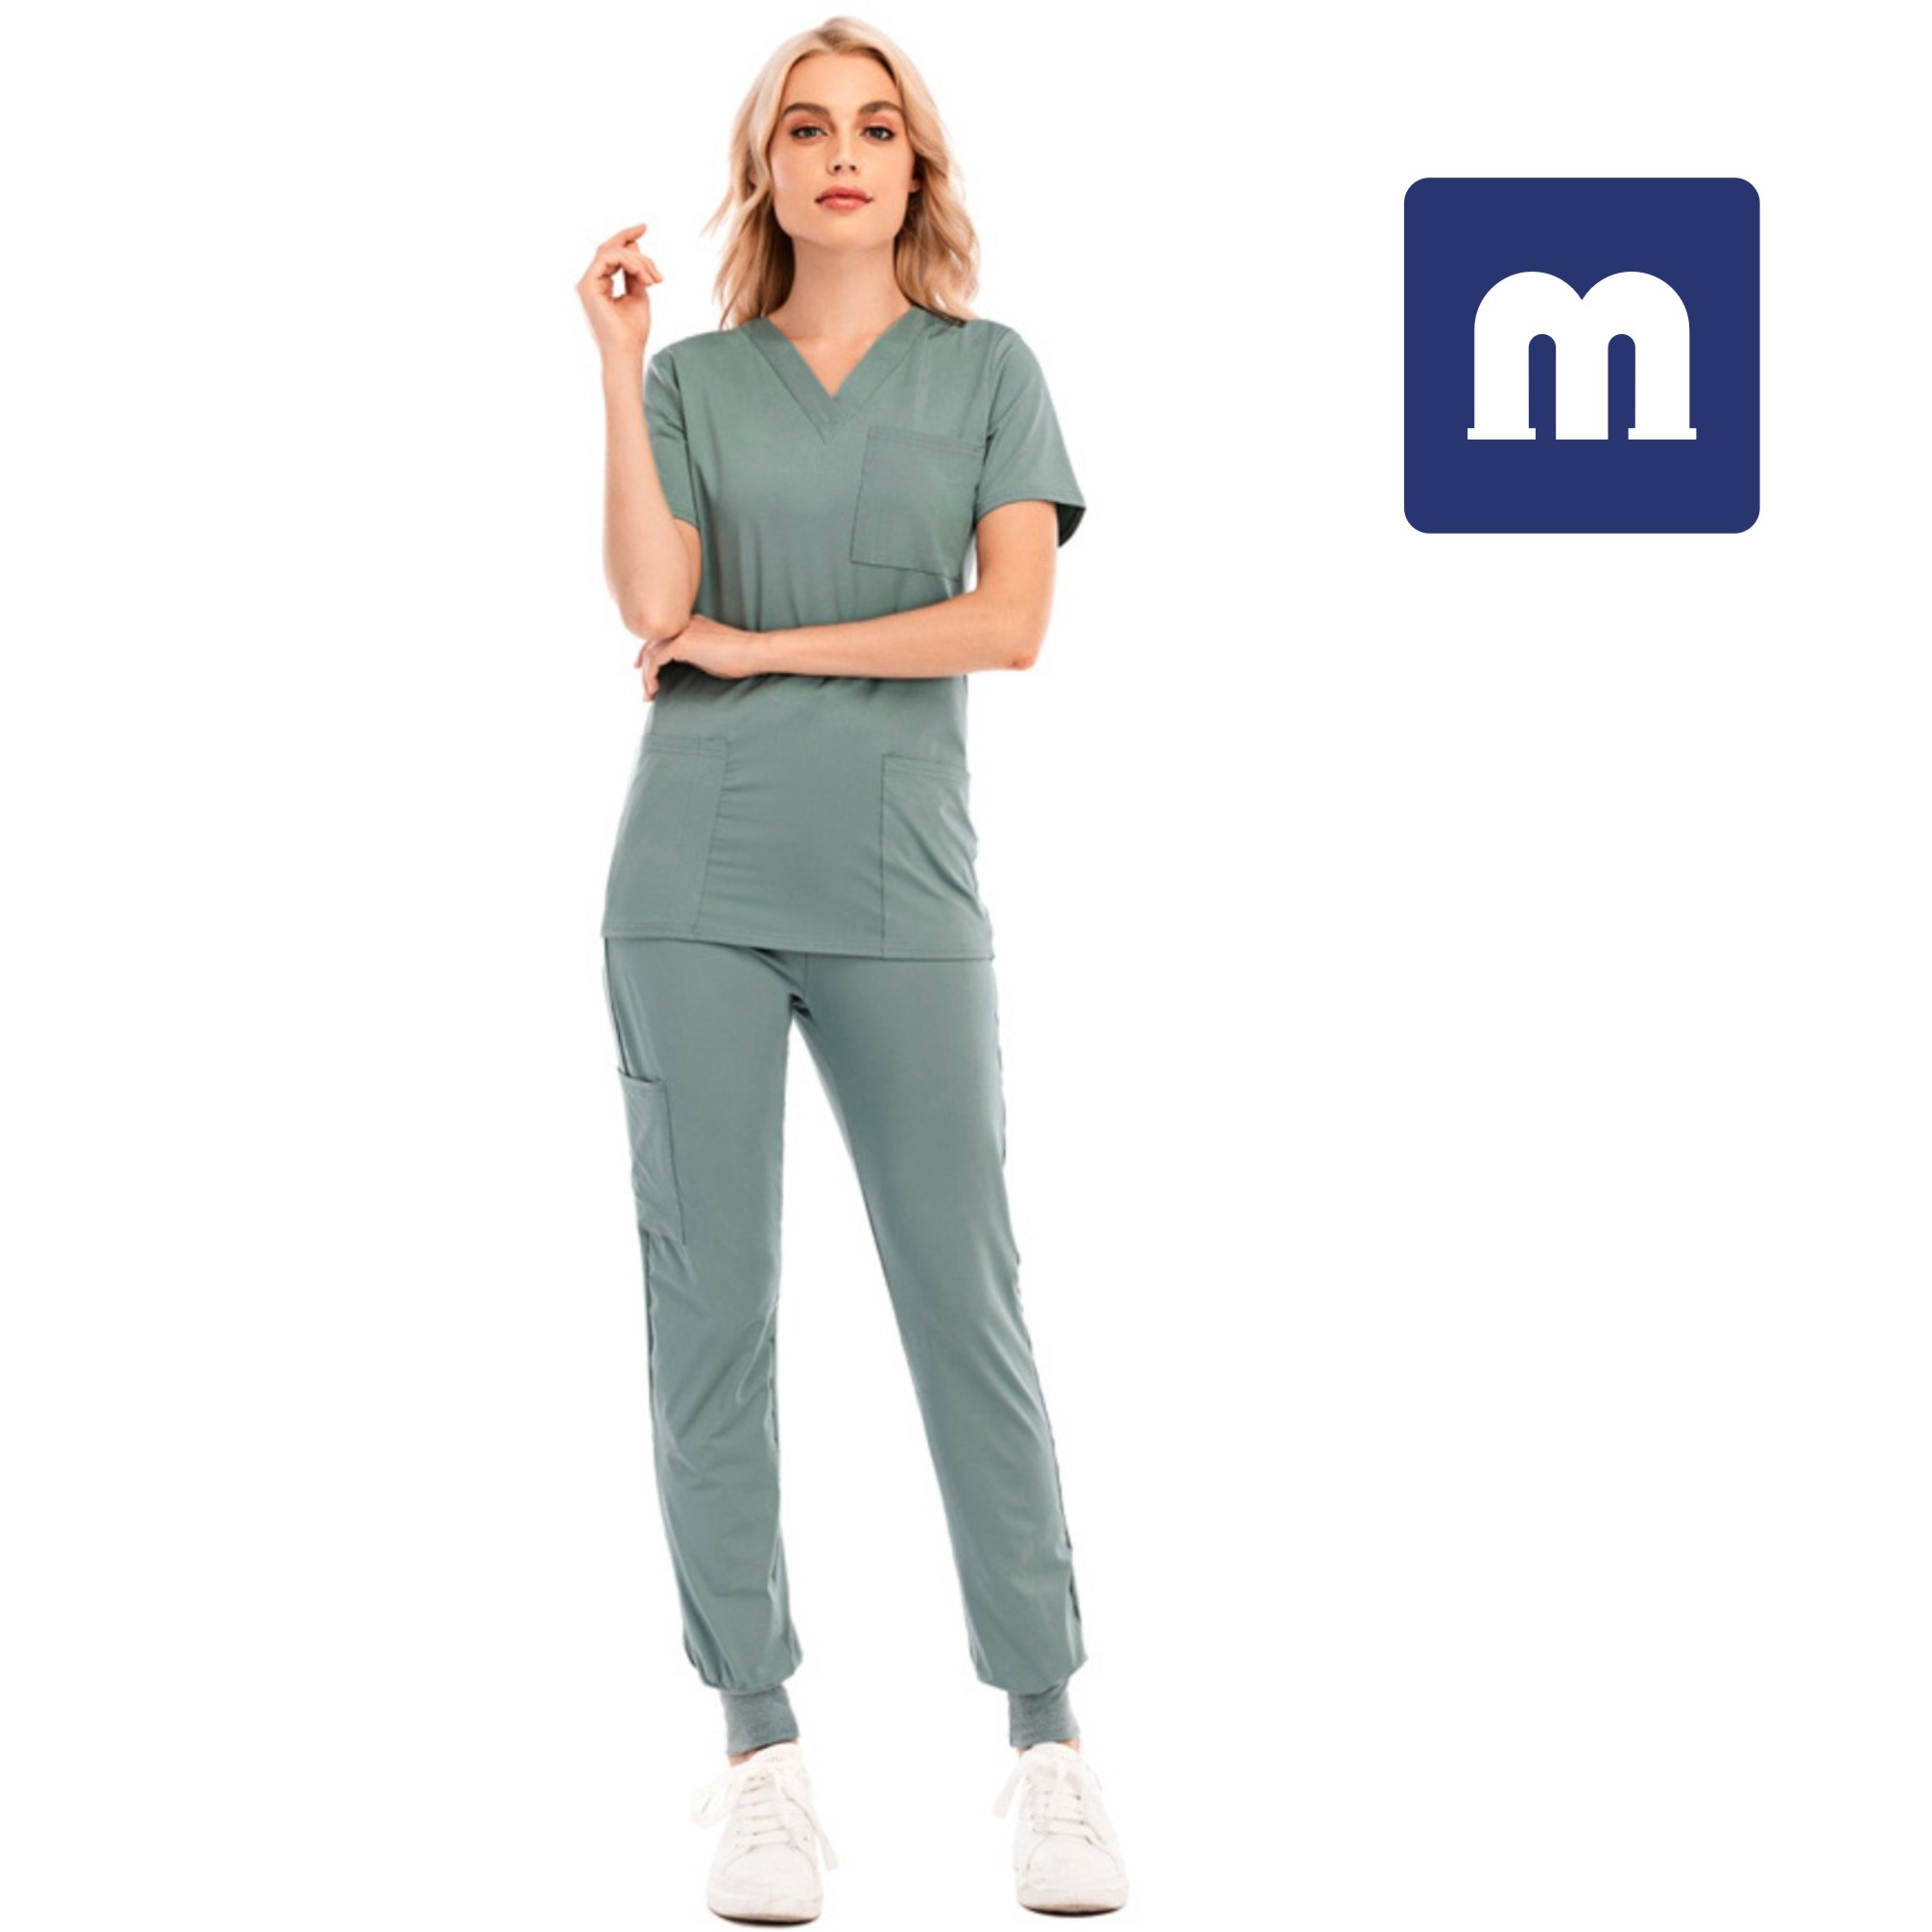 

Medigo-012 Women's Two Piece Pants Solid Color Spa Threaded Clinic Work Suits Tops+pants Unisex Scrubs Pet Nursing hospital Uniform Suit, Purple